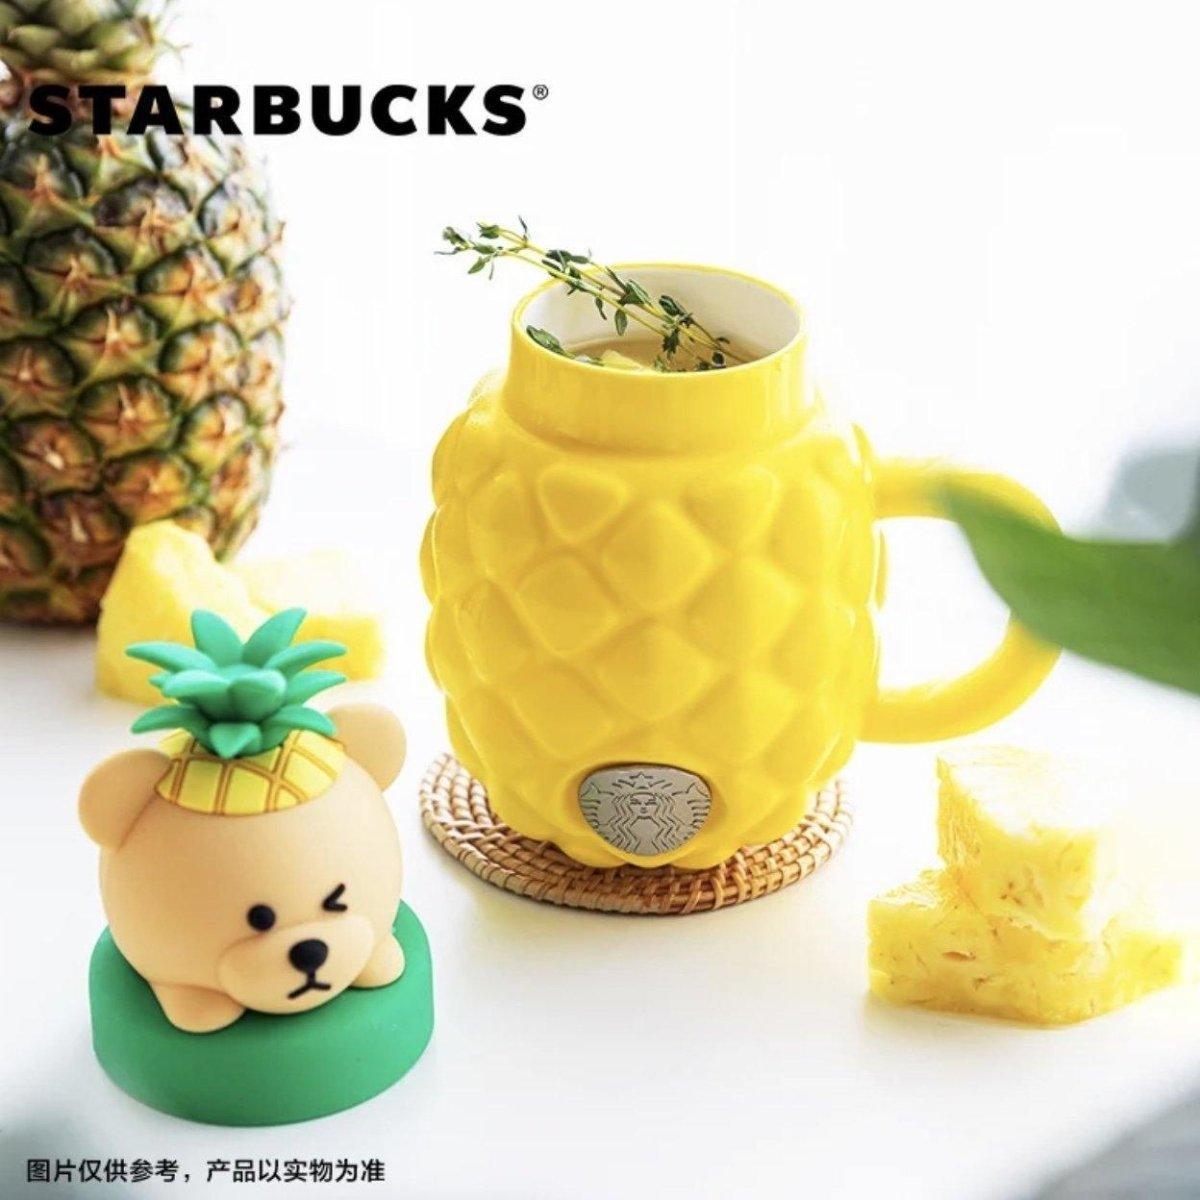 Starbucks China Yellow Pineapple Ceramic Mug (Bright Summer) - Ann Ann Starbucks